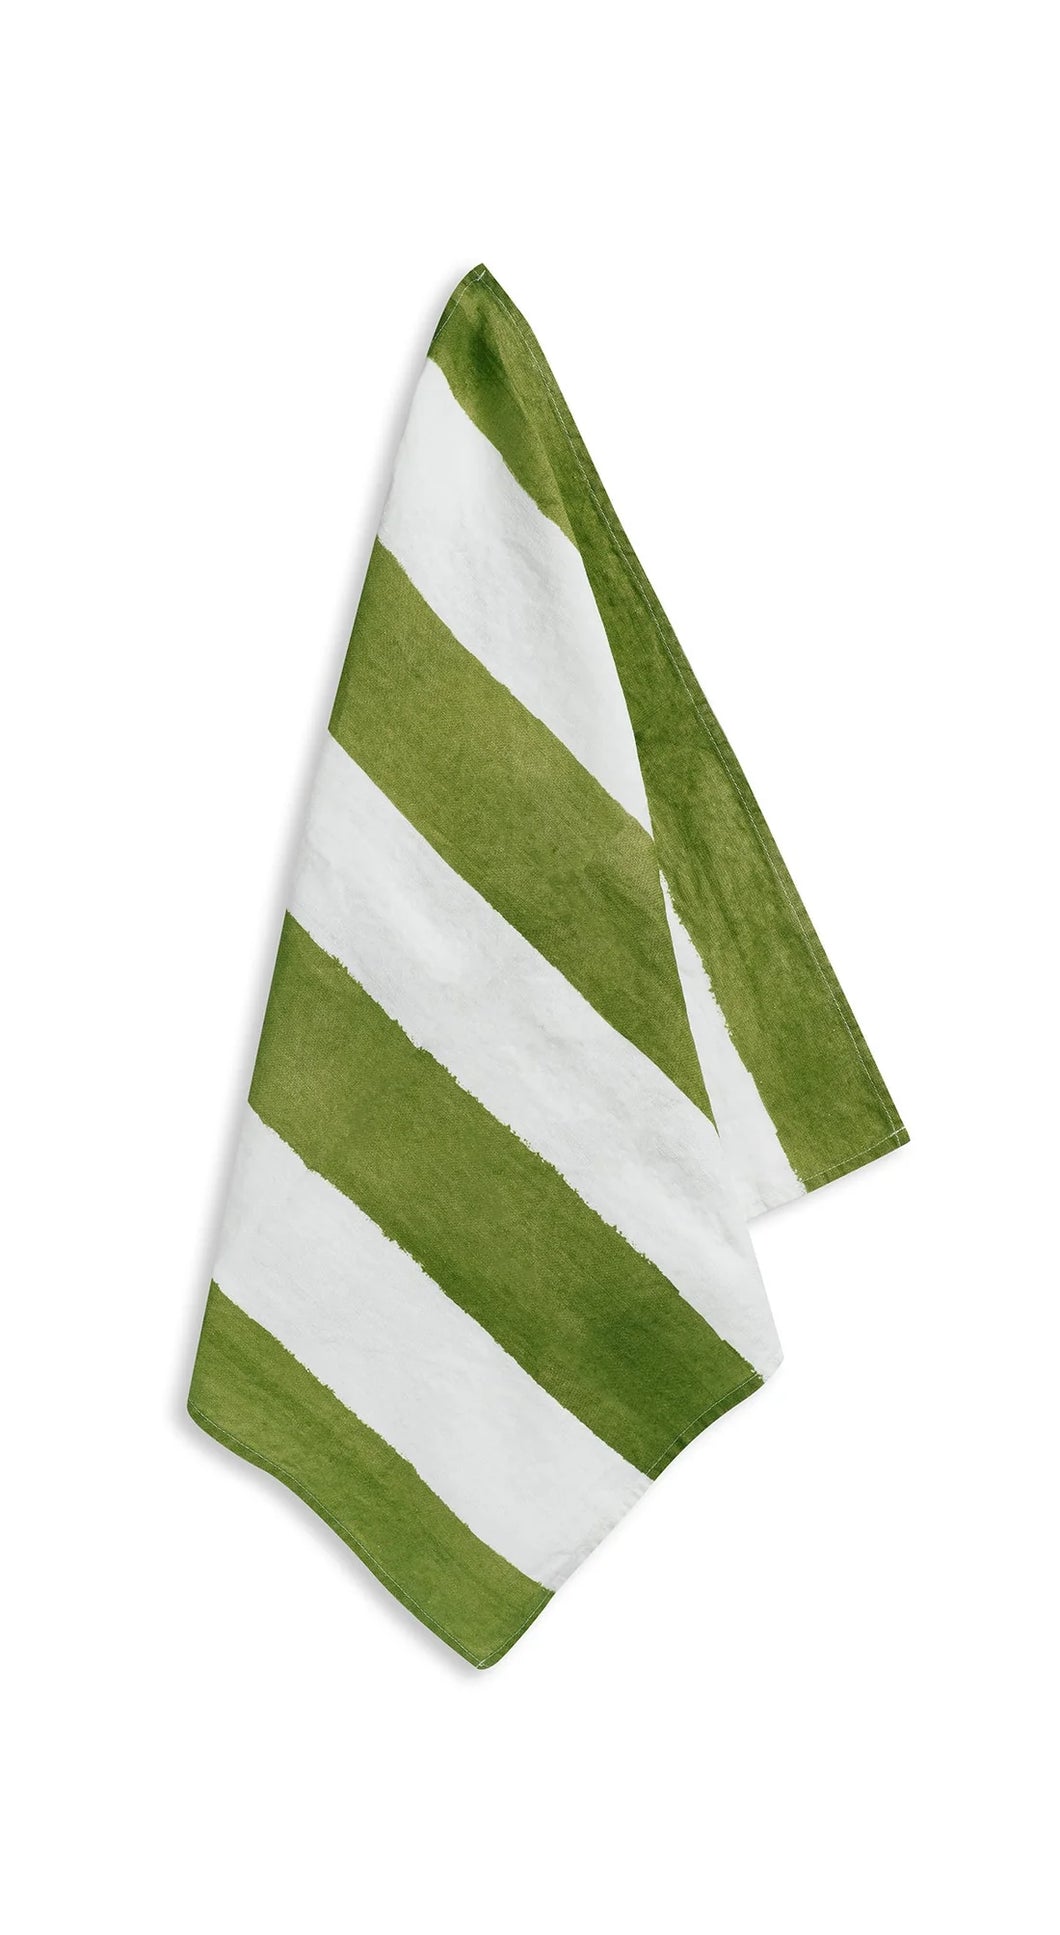 Stripe Linen Napkin - Green & White